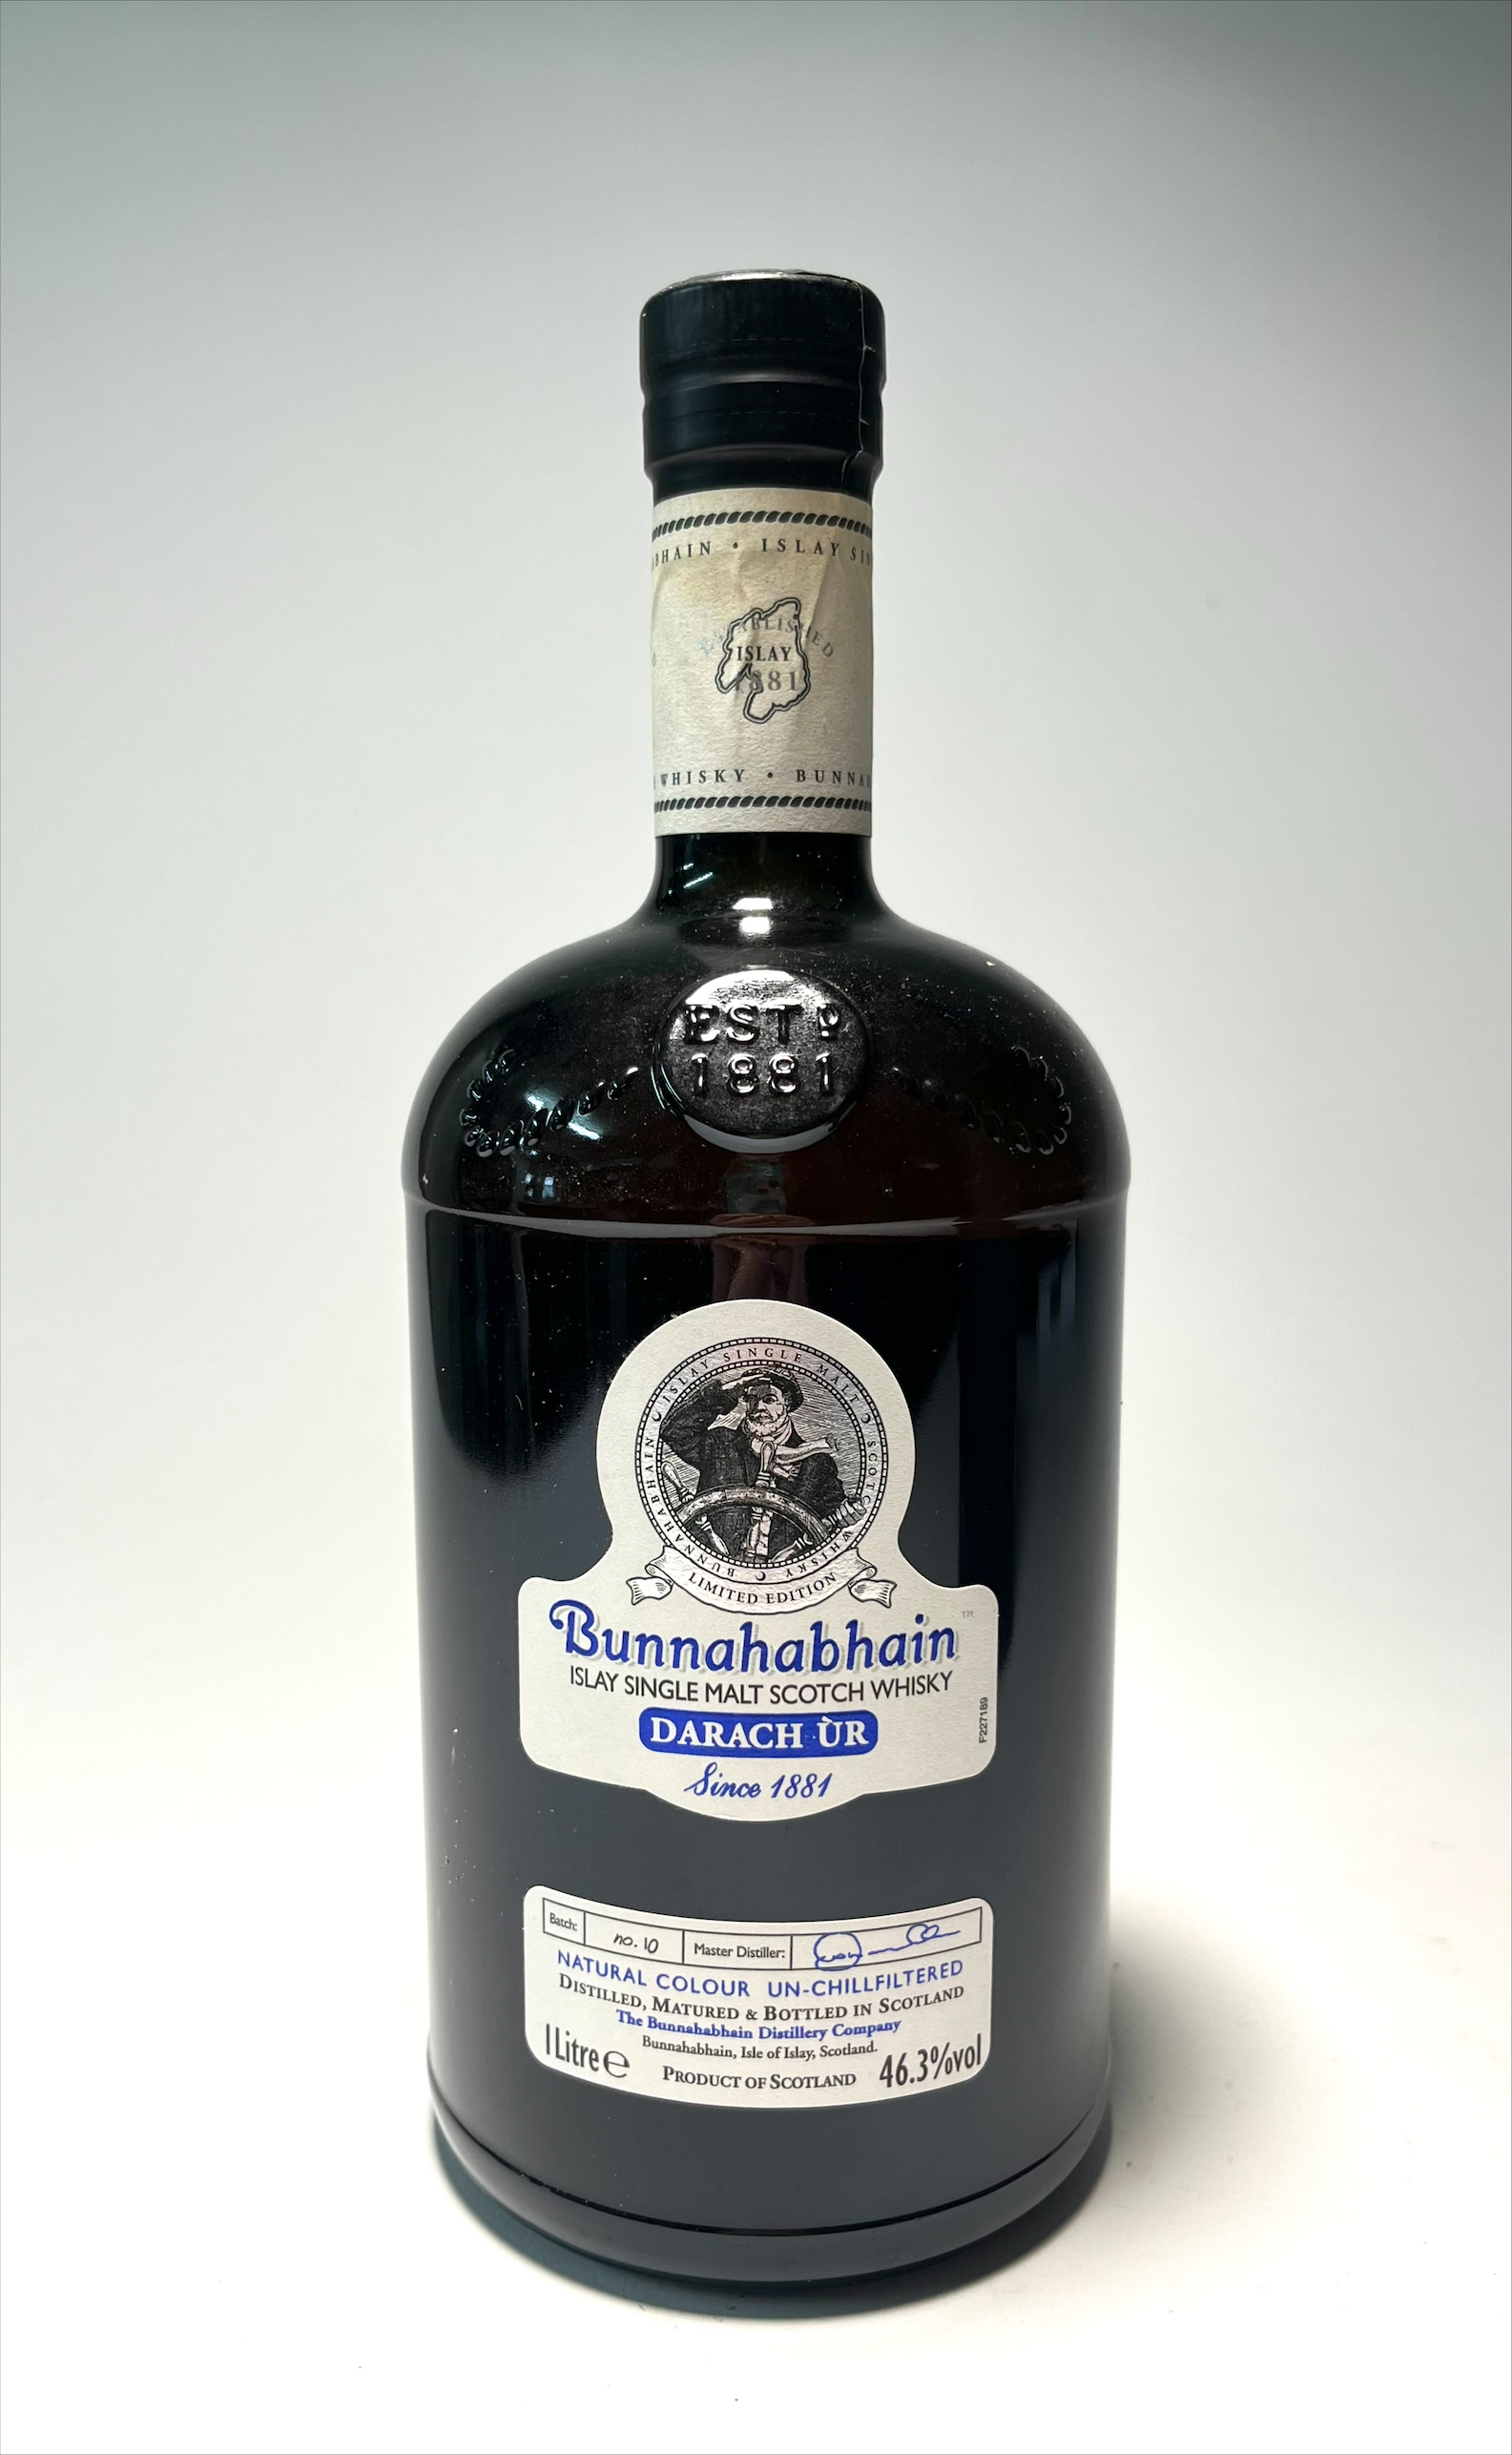 A bottle of Bunnahabhain Islay Single Malt Scotch whisky Darach Ur, The Bunnahabhain Distillery - Image 2 of 2